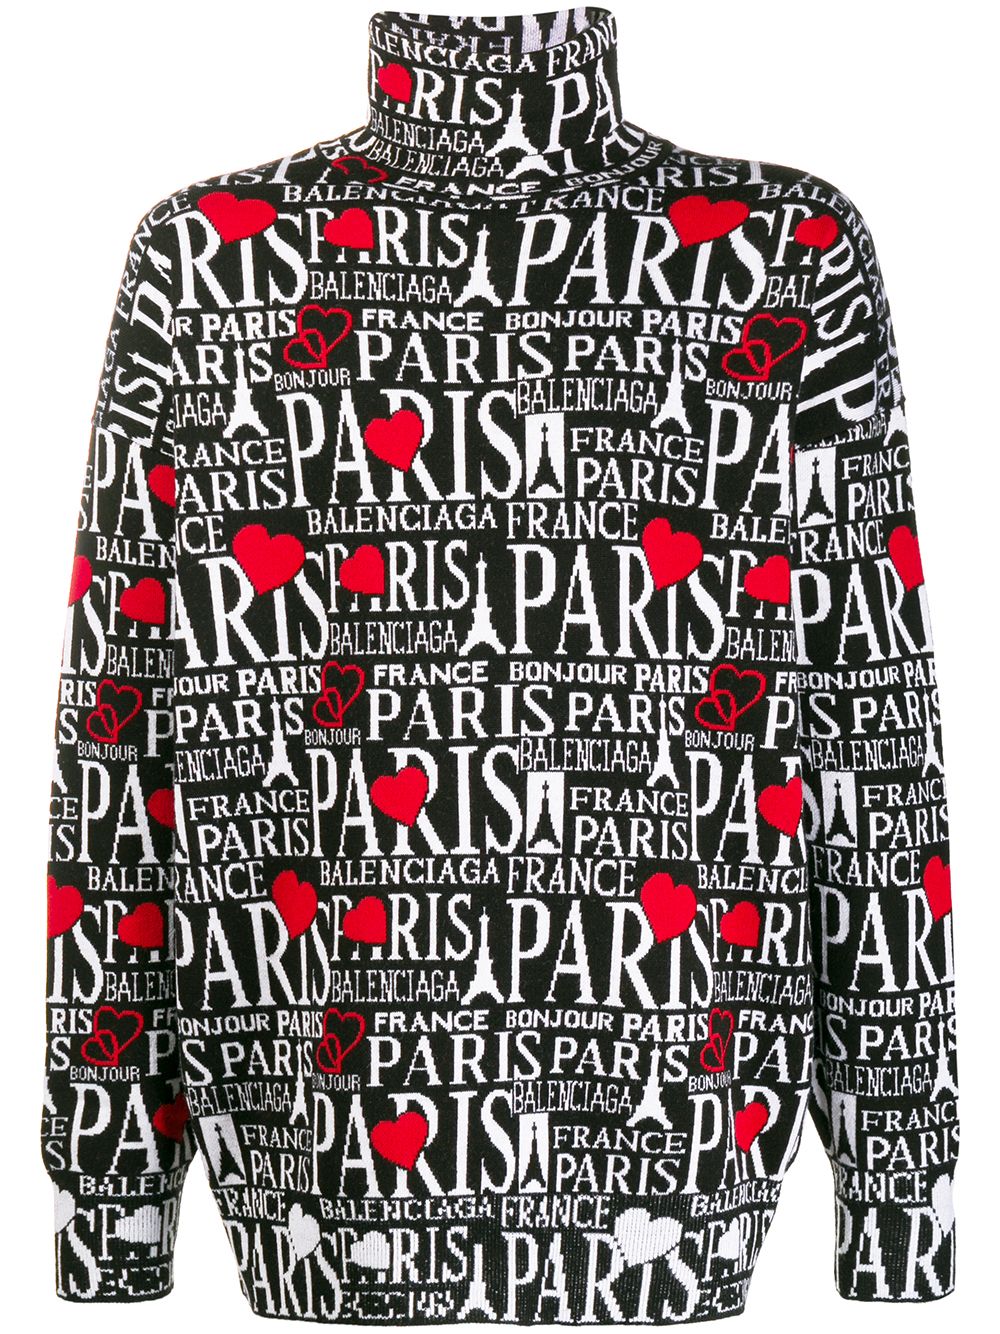 фото Balenciaga свитер Paris с высоким воротником и логотипом